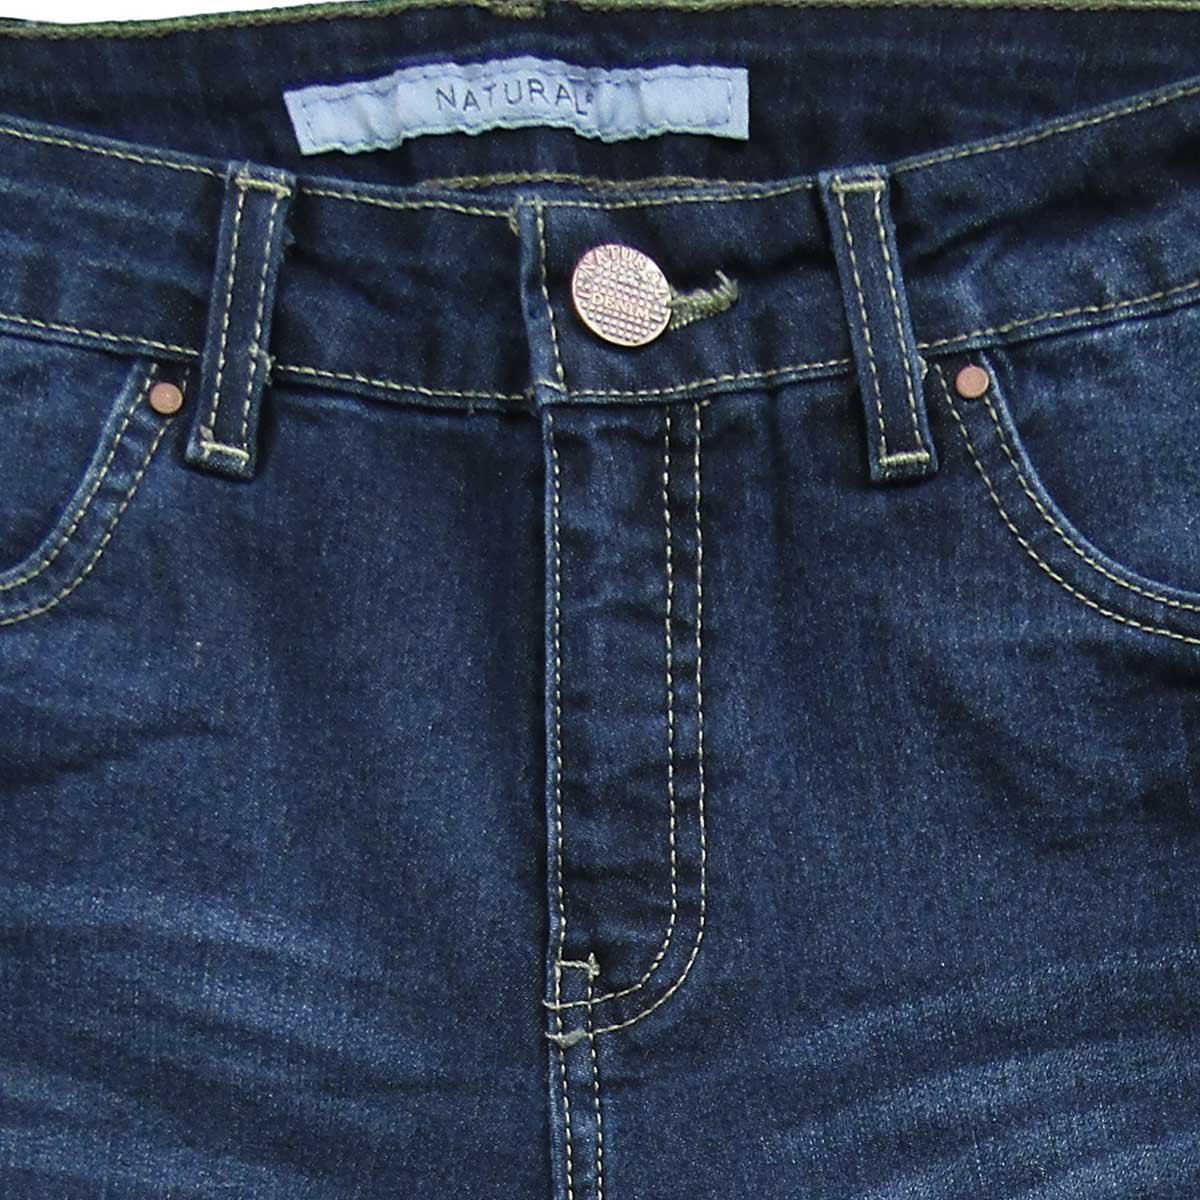 Jeans Corte Recto con Bolsas Natural